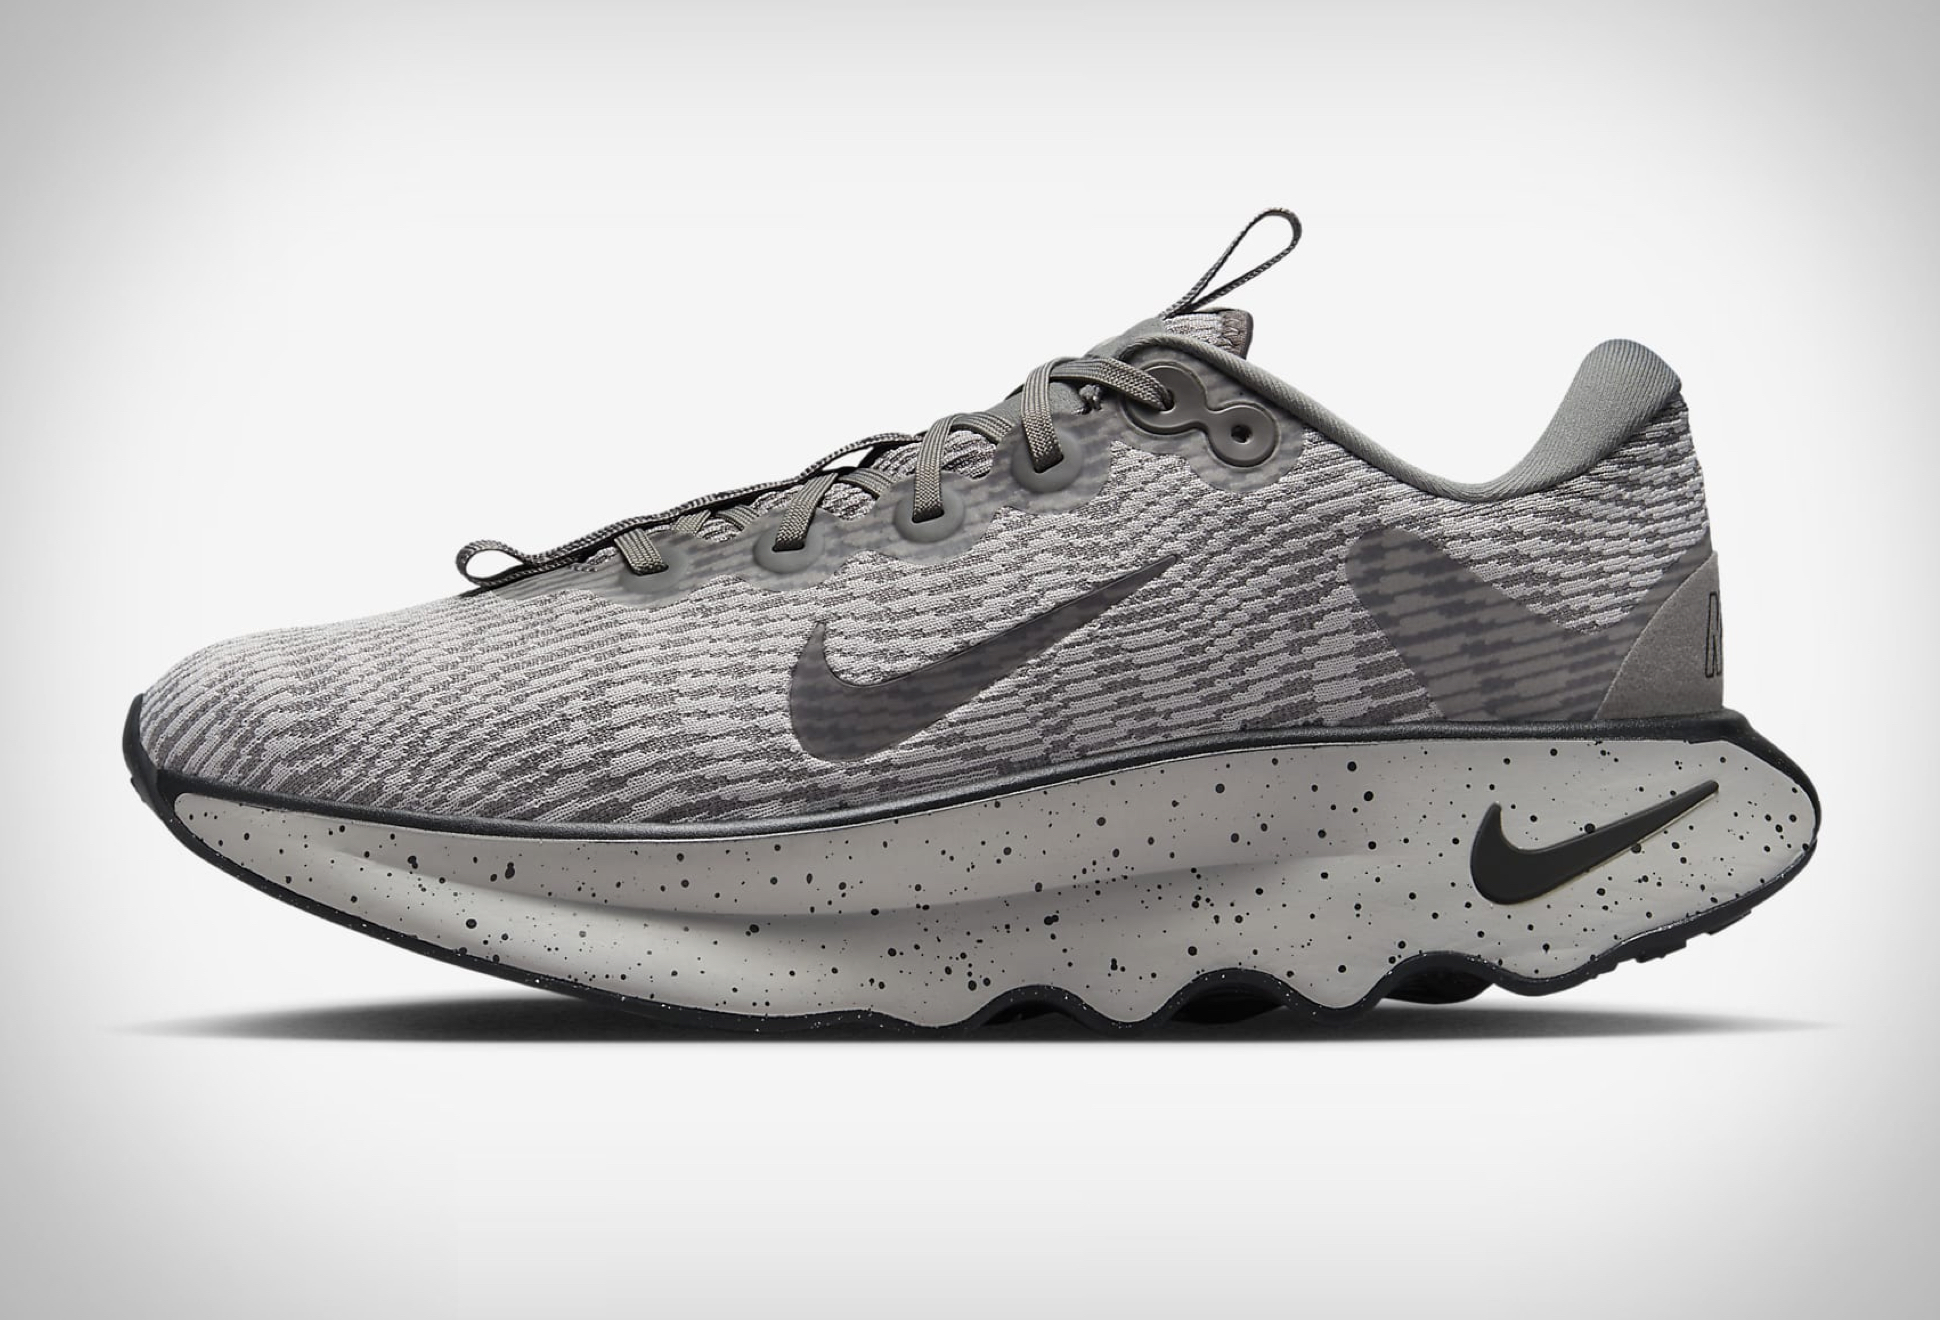 Nike Motiva Walking Shoes - Image